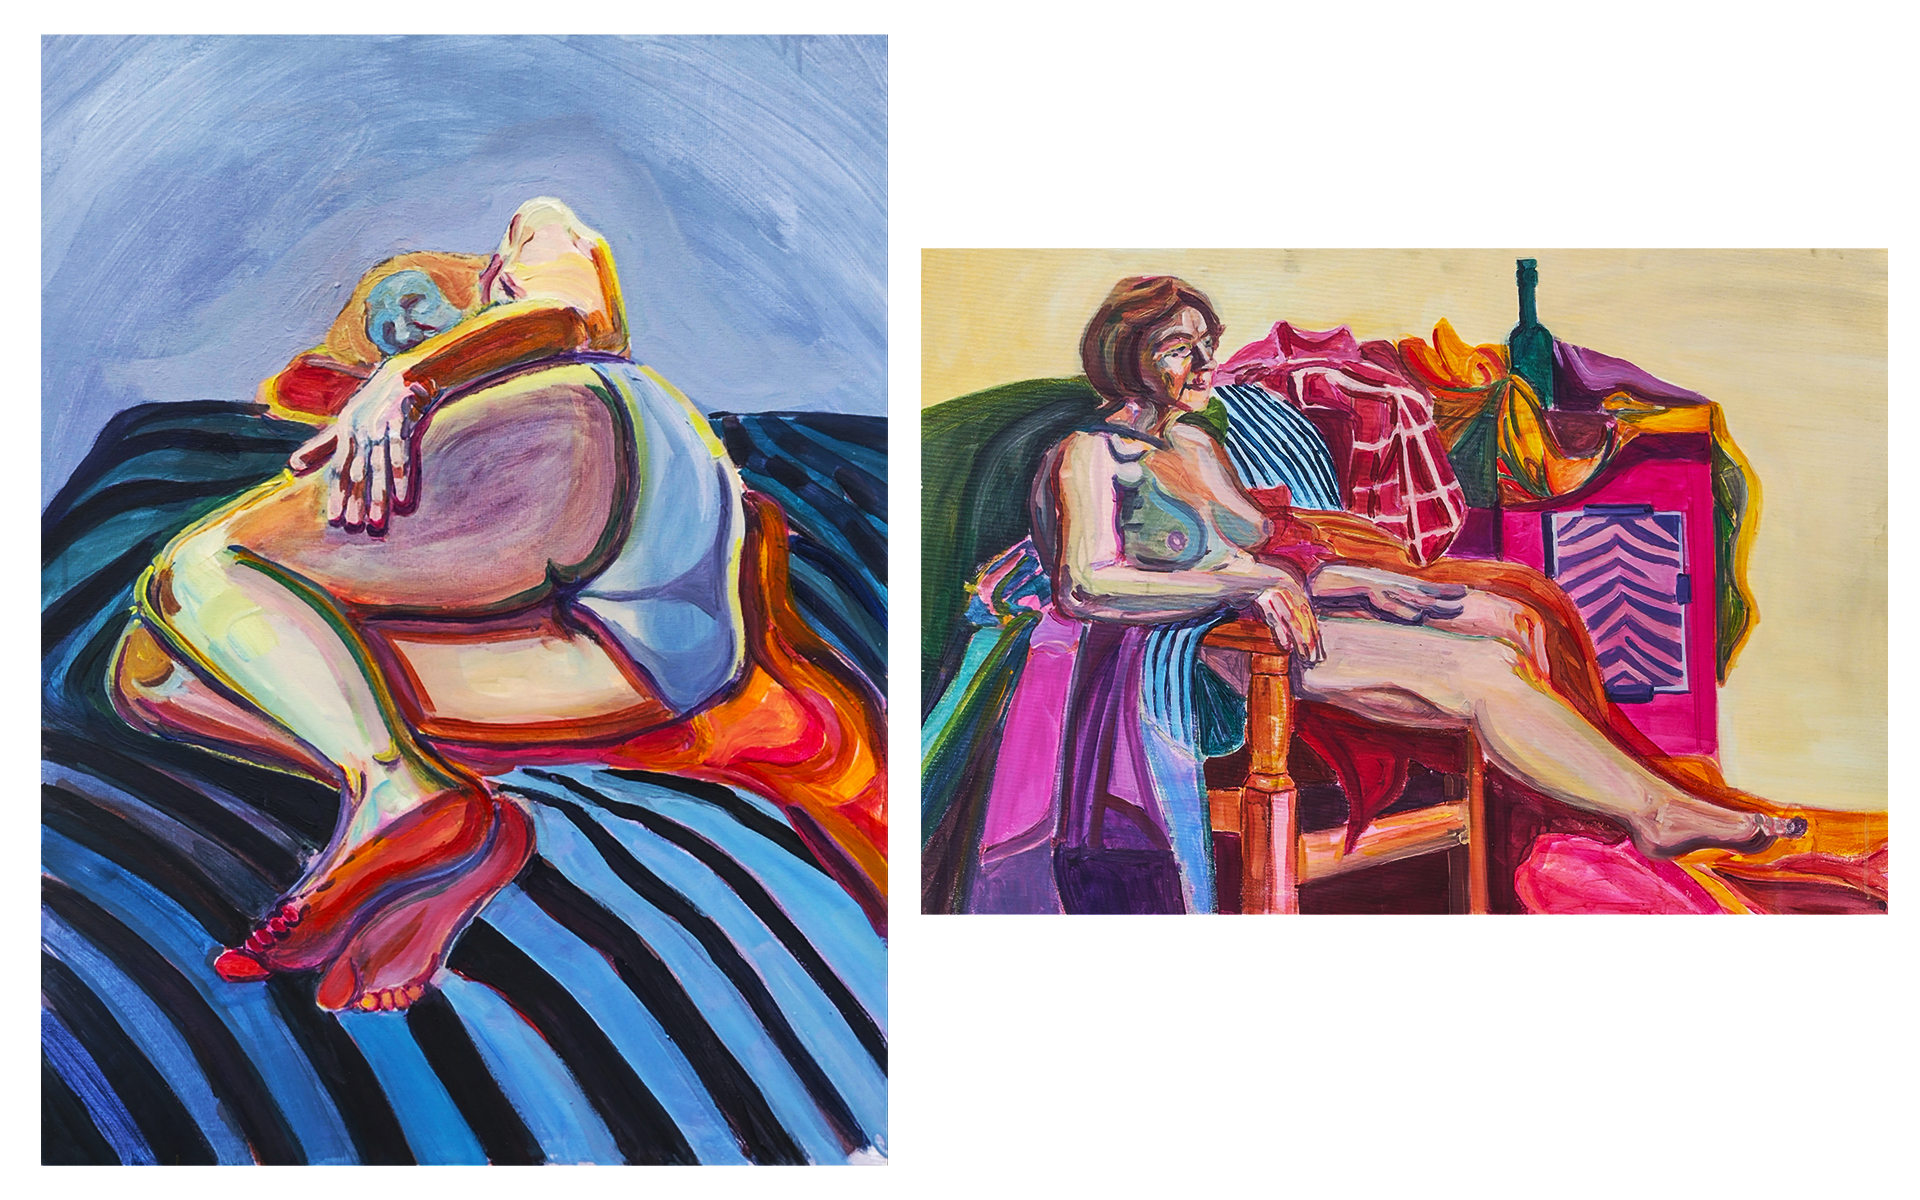 Na zdjęciu widnieją dwa obrazy z postacią kobiety. Po lewej stronie kobieta leżąca na materiale w niebieskie paski. Po prawej stronie postać siedząca w fotelu w otoczeniu kolorowej martwej natury.  